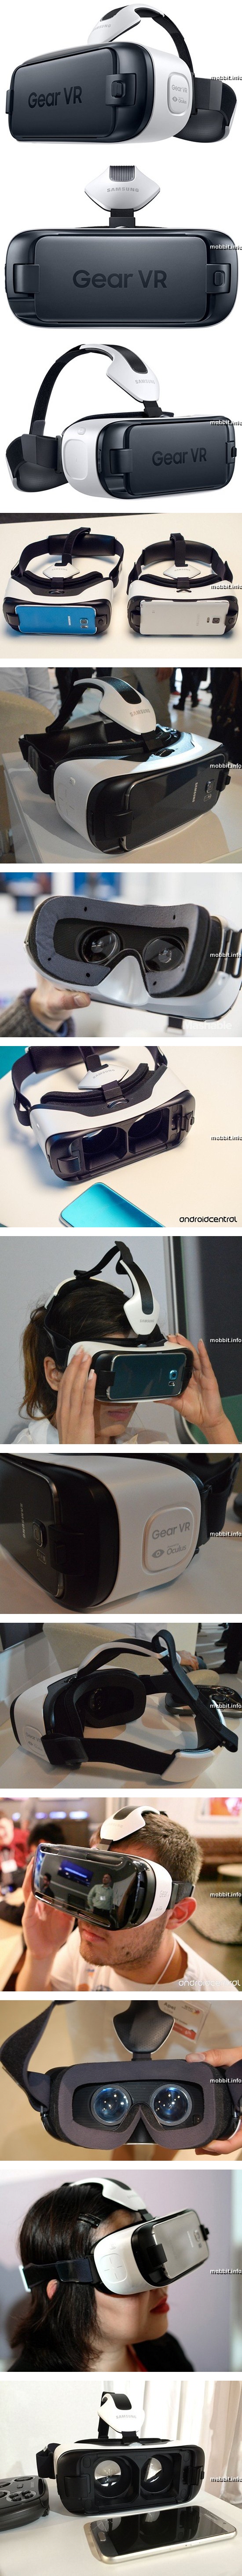 Gear VR Innovator Edition